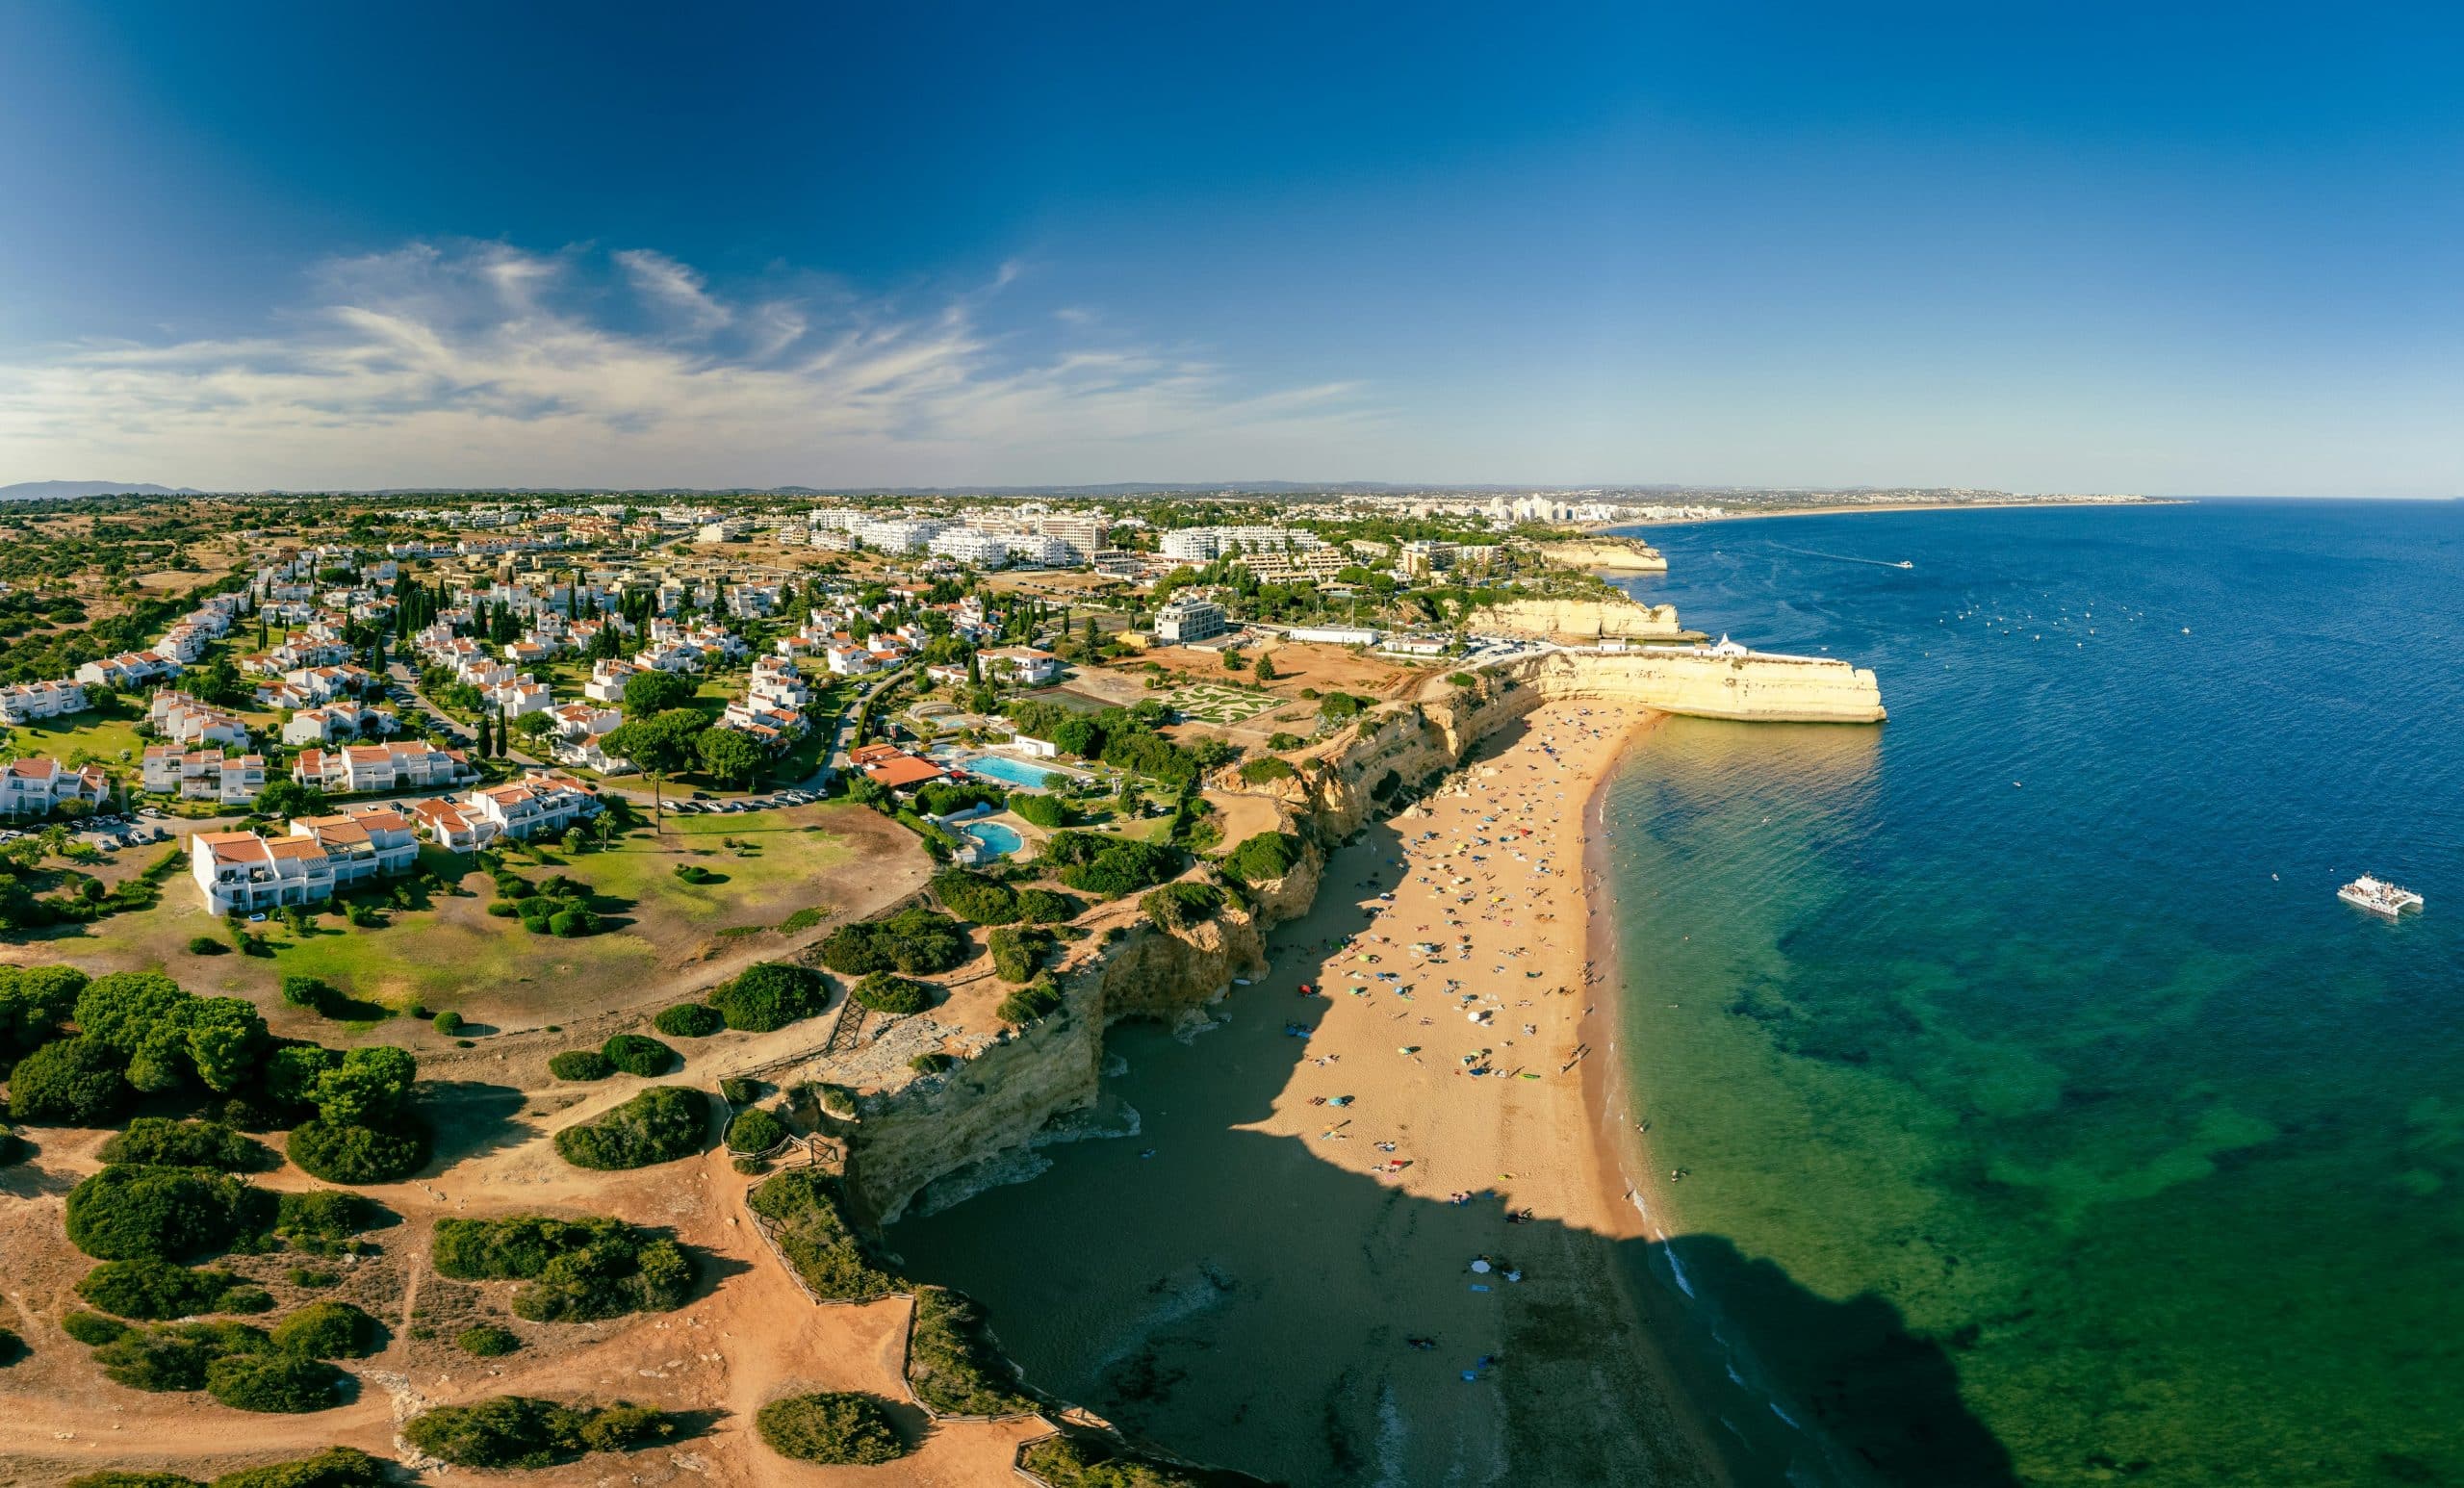 Vacances au Portugal : passez par Algarve surtout à Vilamoura